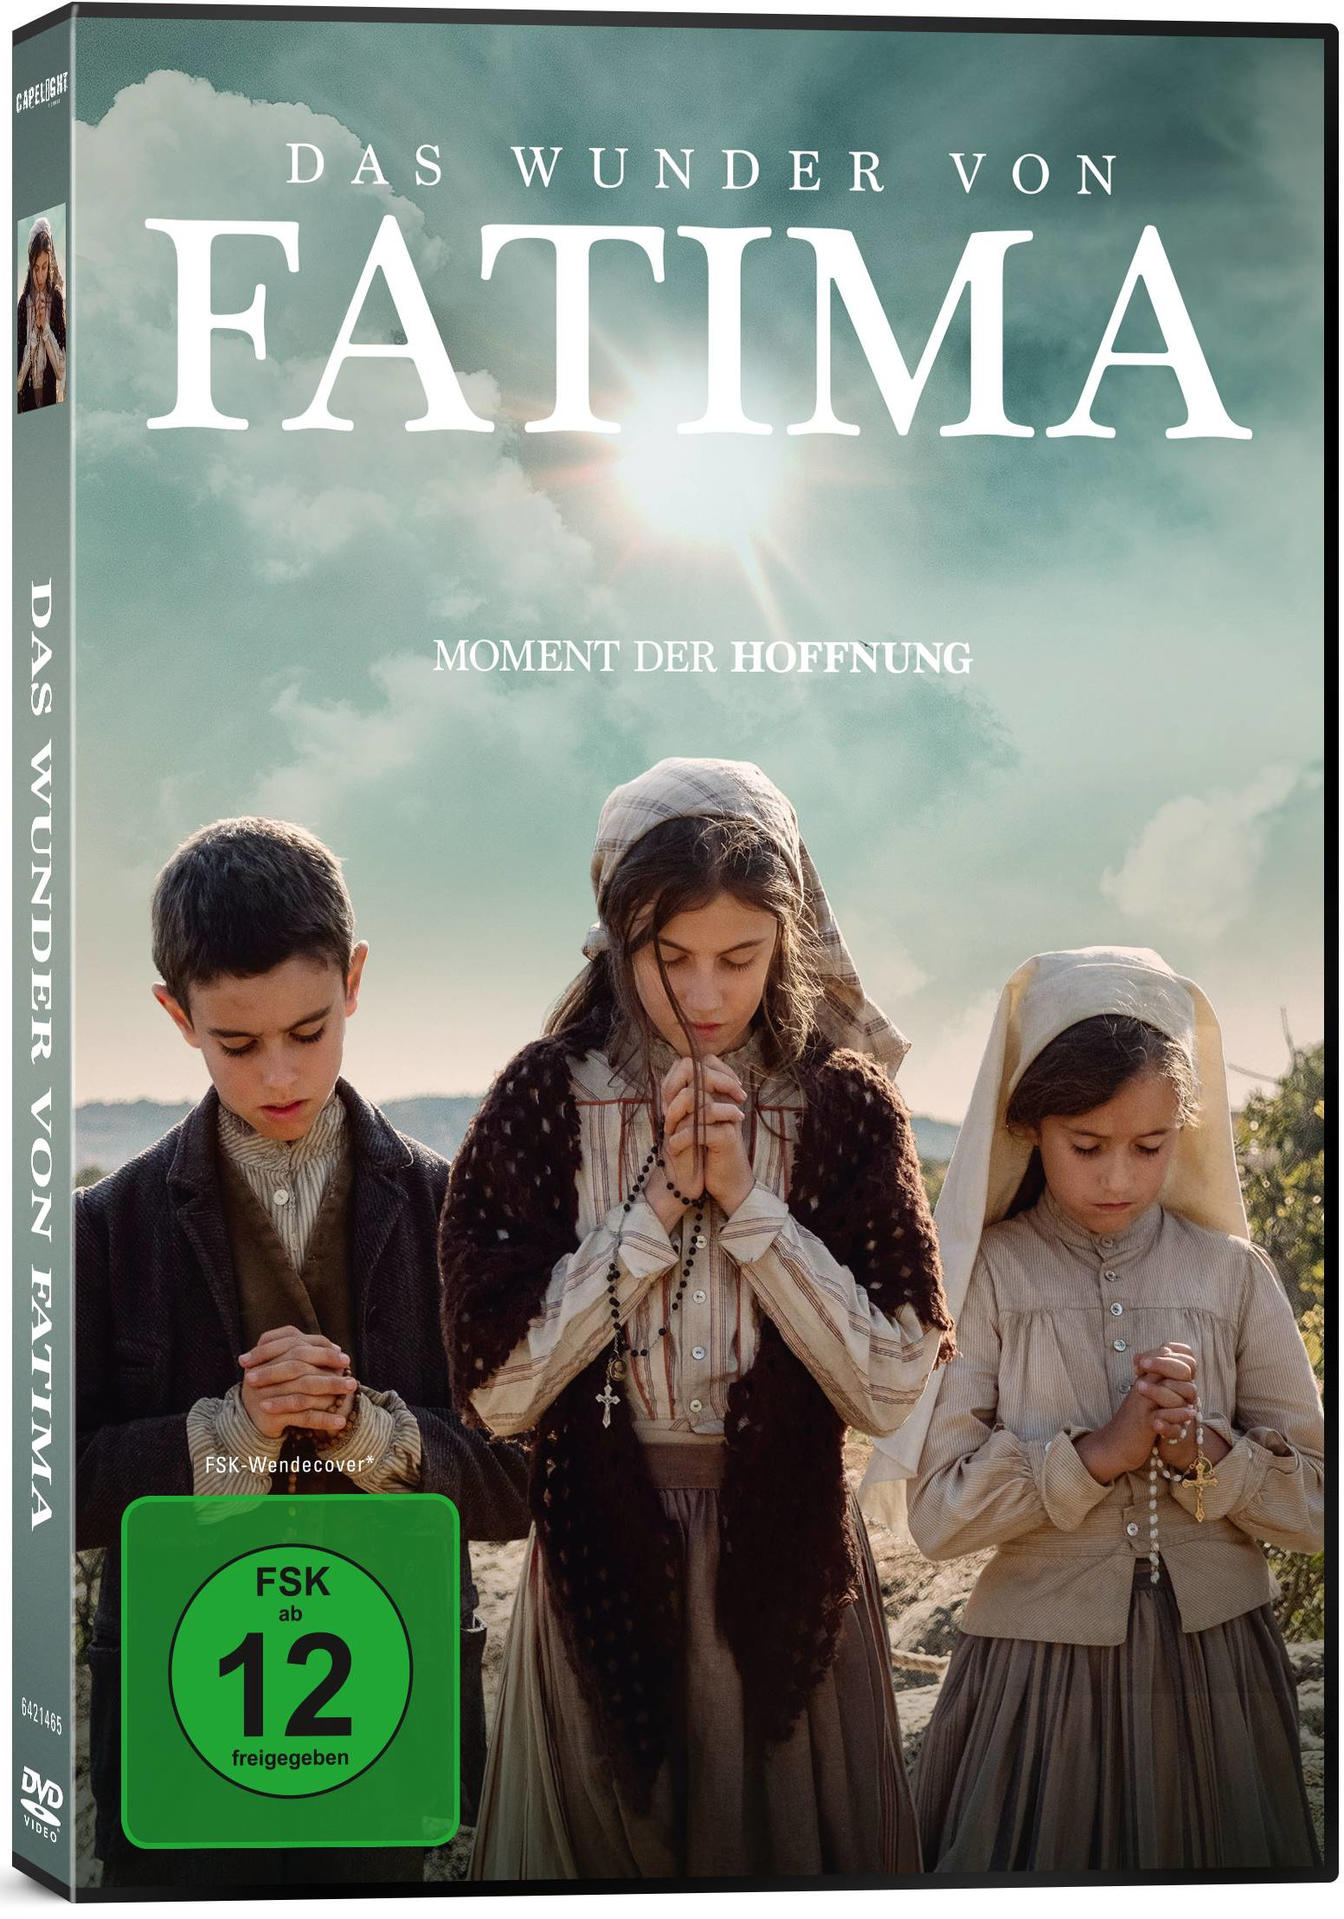 DVD Wunder Das Fatima von